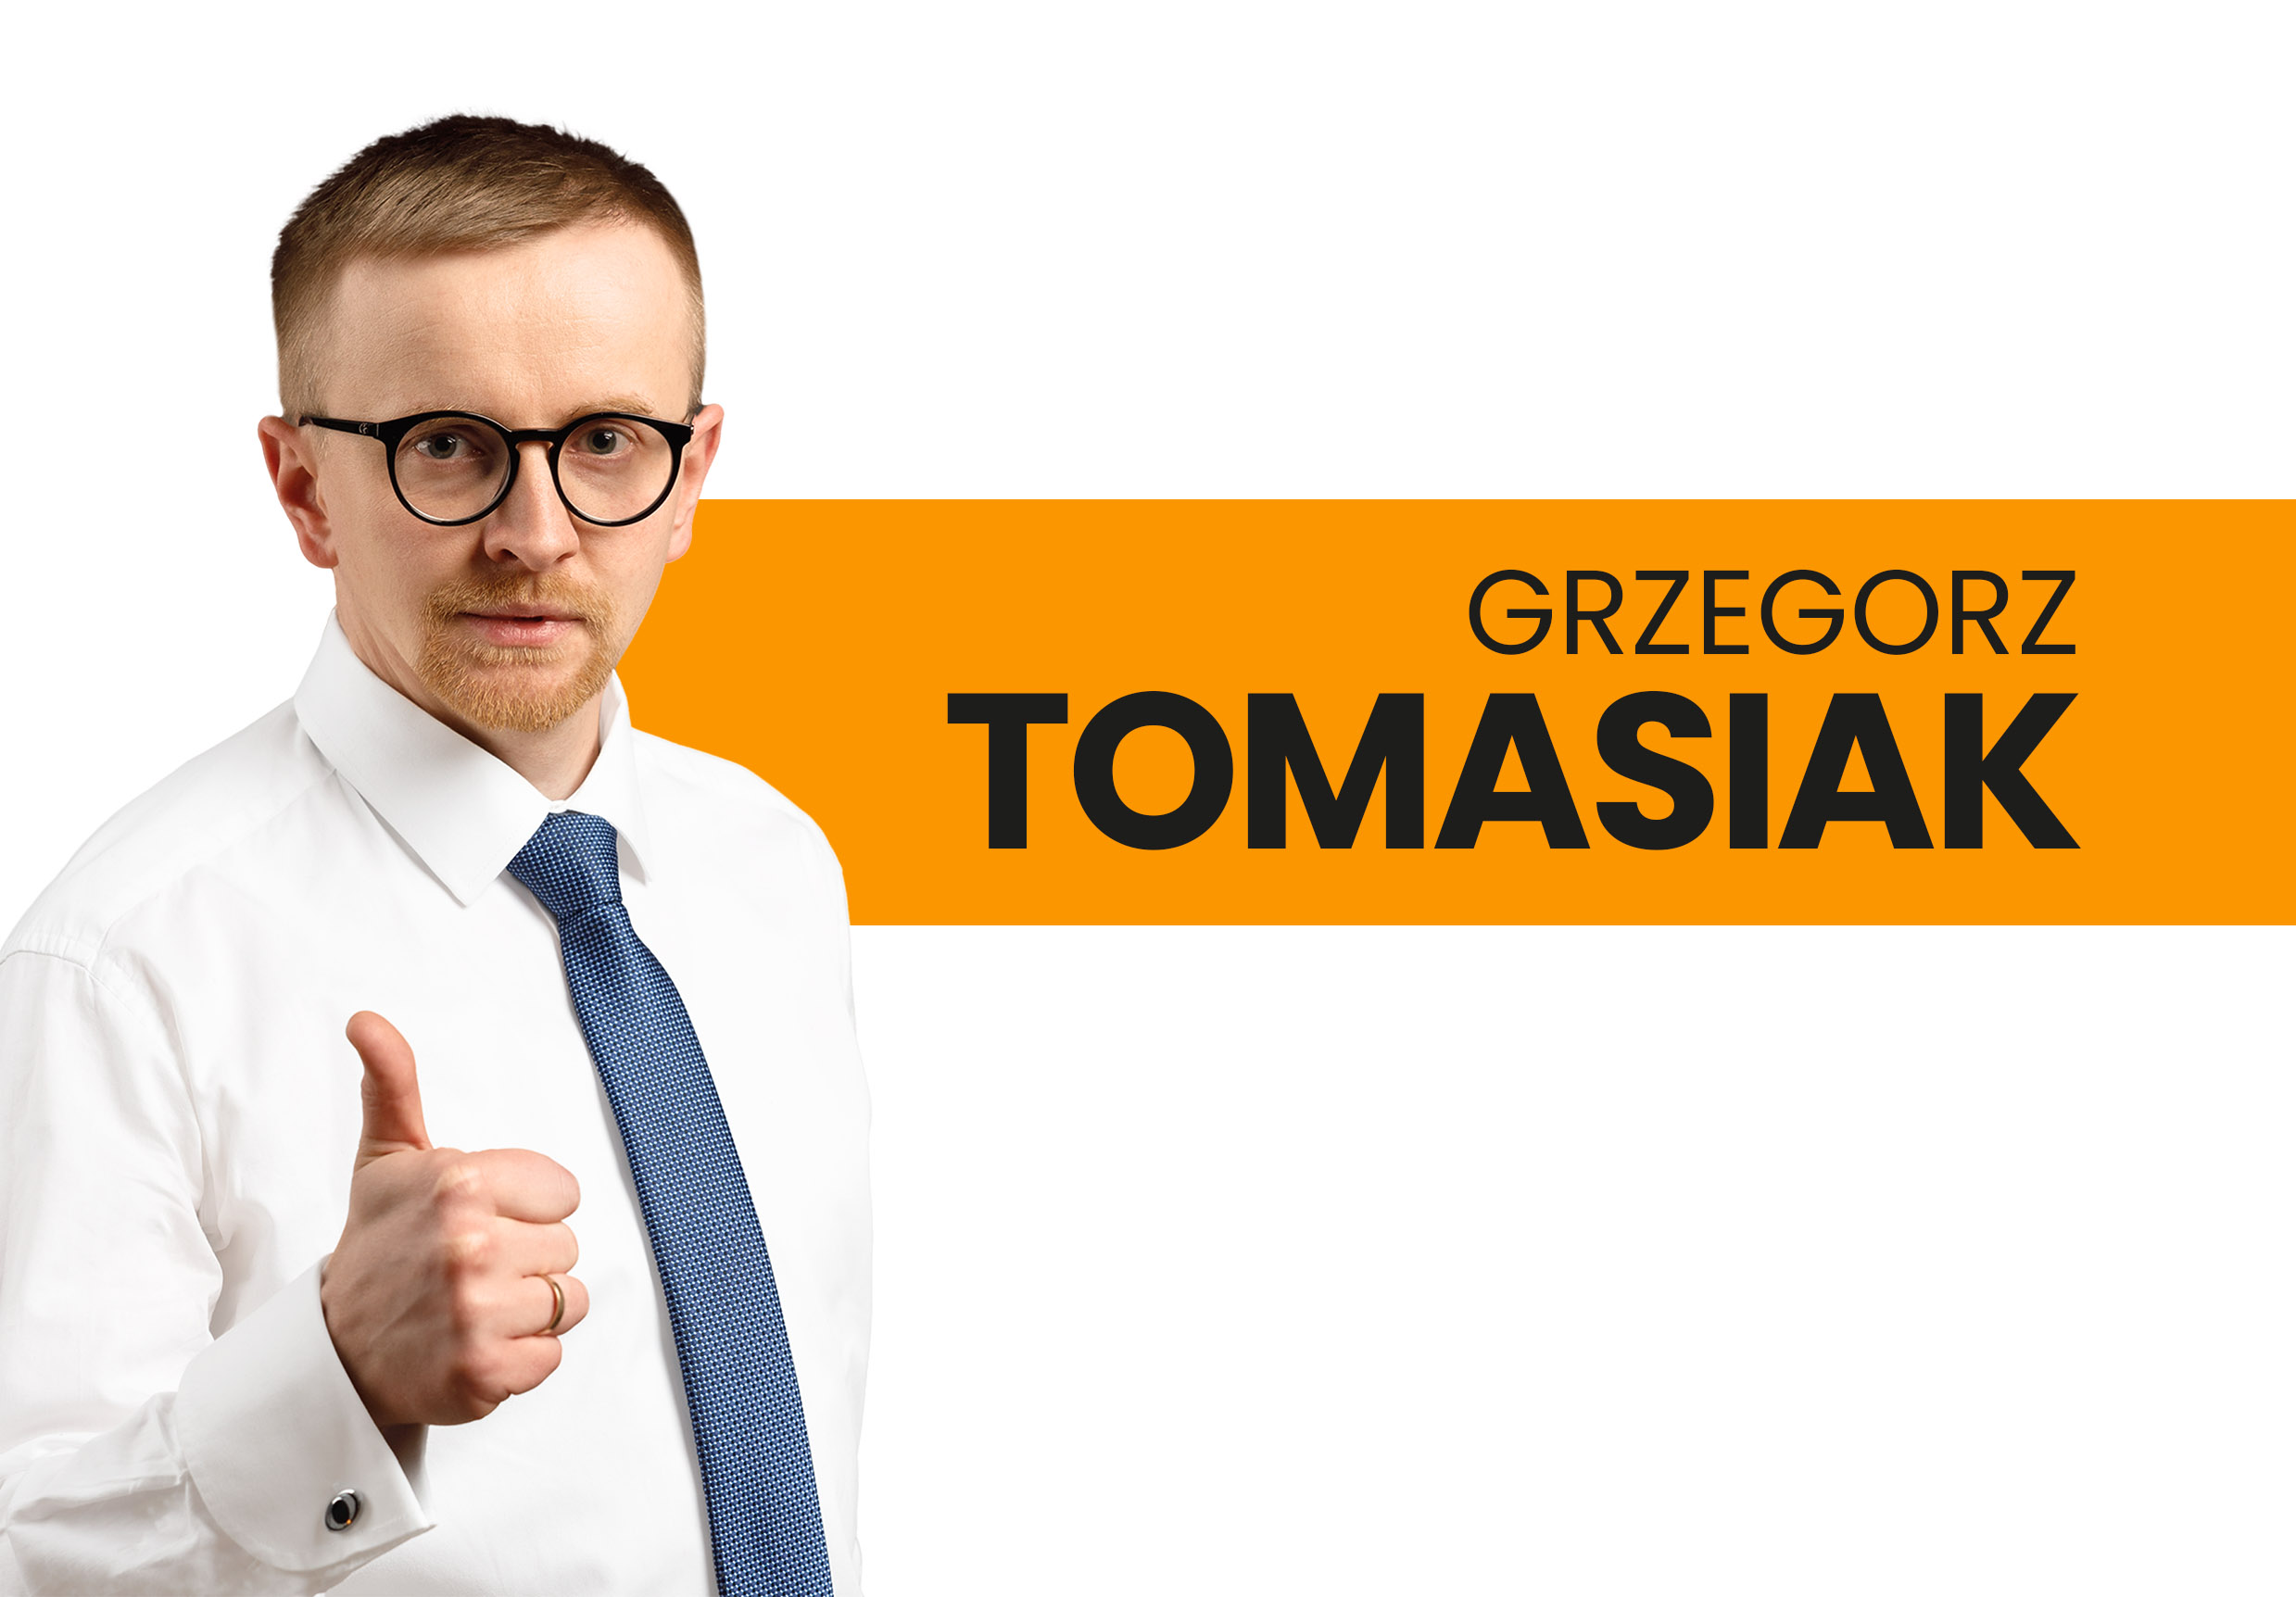 Grzegorz Tomasiak startuje do Powiatu!